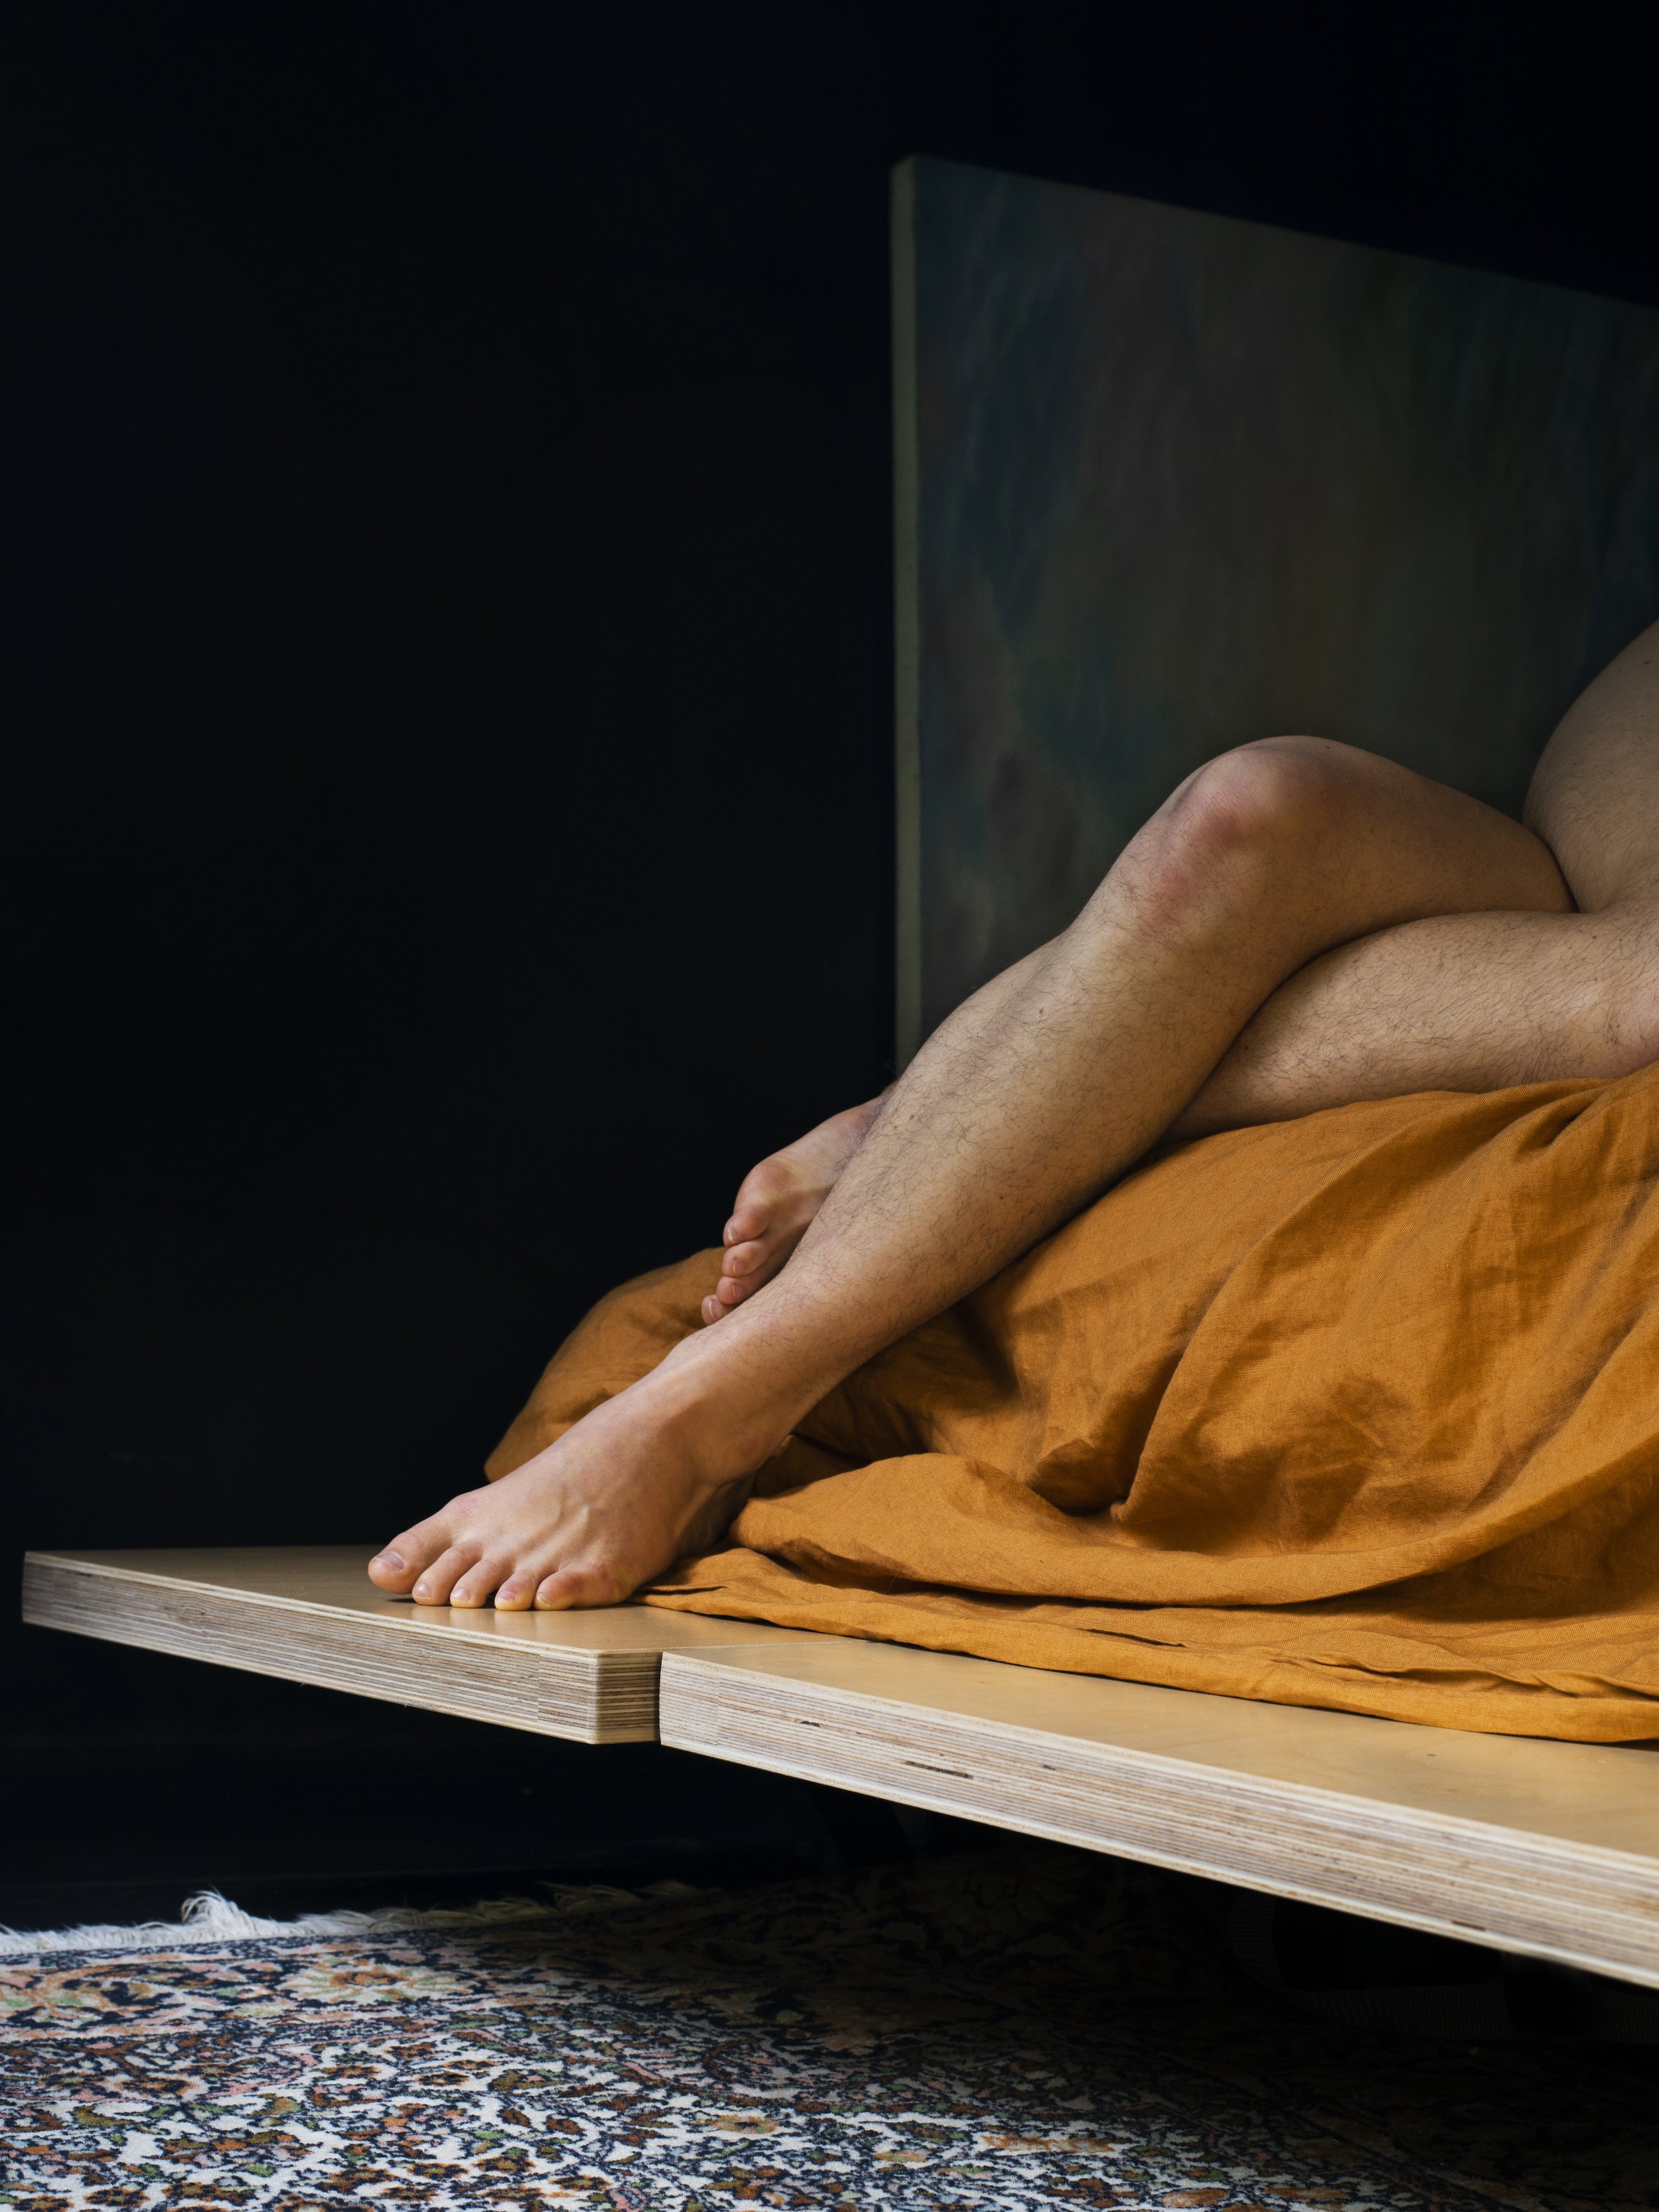 Self Portrait, Legs in Bed